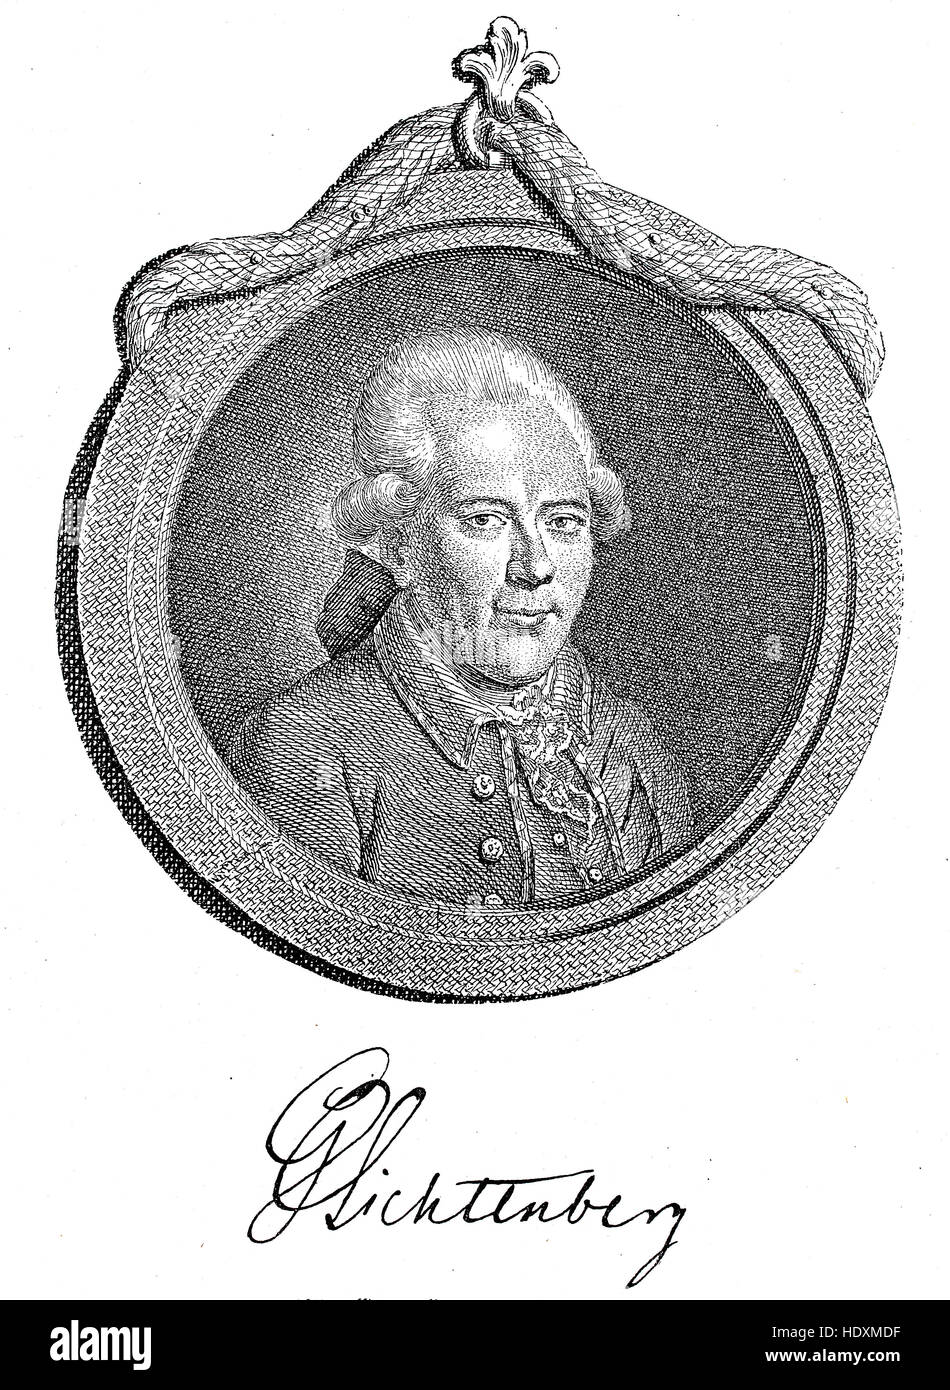 Georg Christoph Lichtenberg, 1742-1799, un mathématicien allemand et le premier professeur de physique expérimentale à l'époque des lumières, gravure sur bois de l'année 1882, l'amélioration numérique Banque D'Images